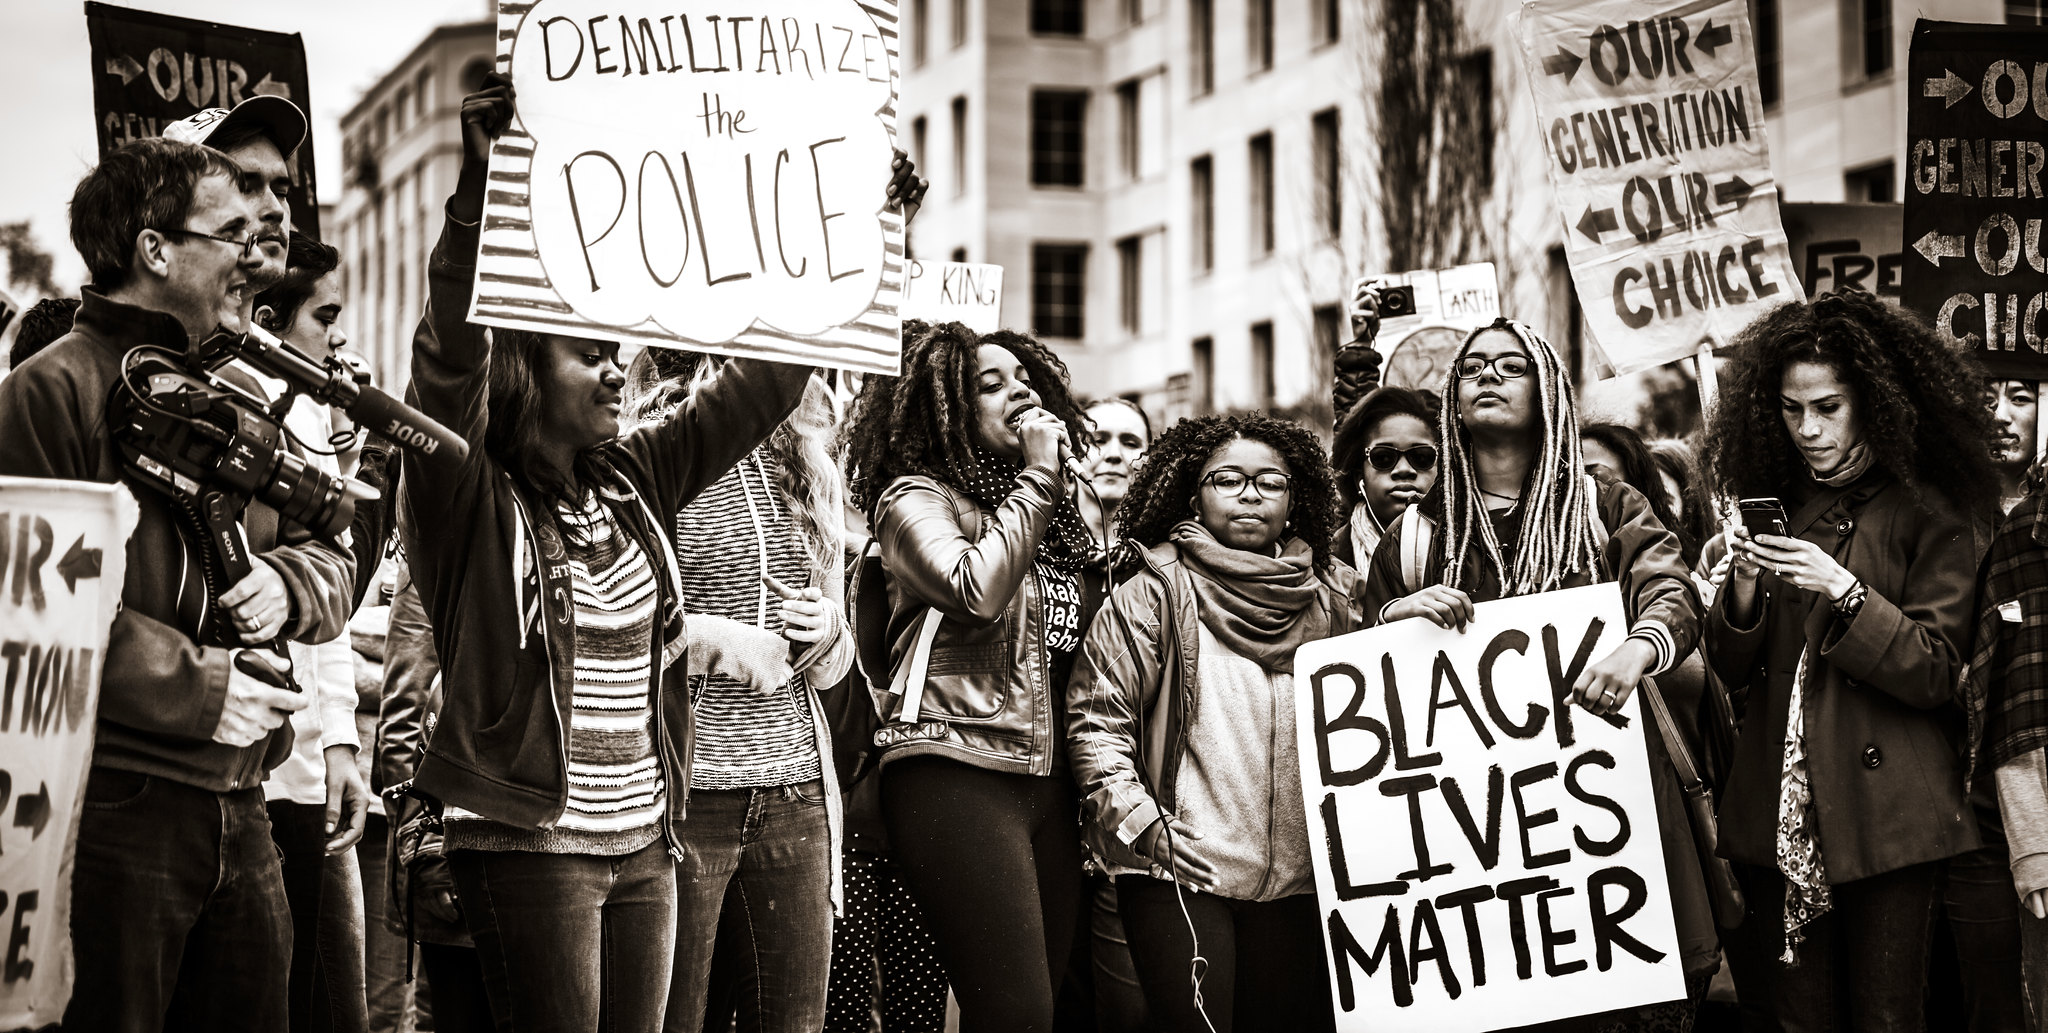 블랙 라이브스 매터 시위. 'Demilitarize the Police, Black Lives Matter', Johnny Silvercloud [CC BY-SA 2.0]